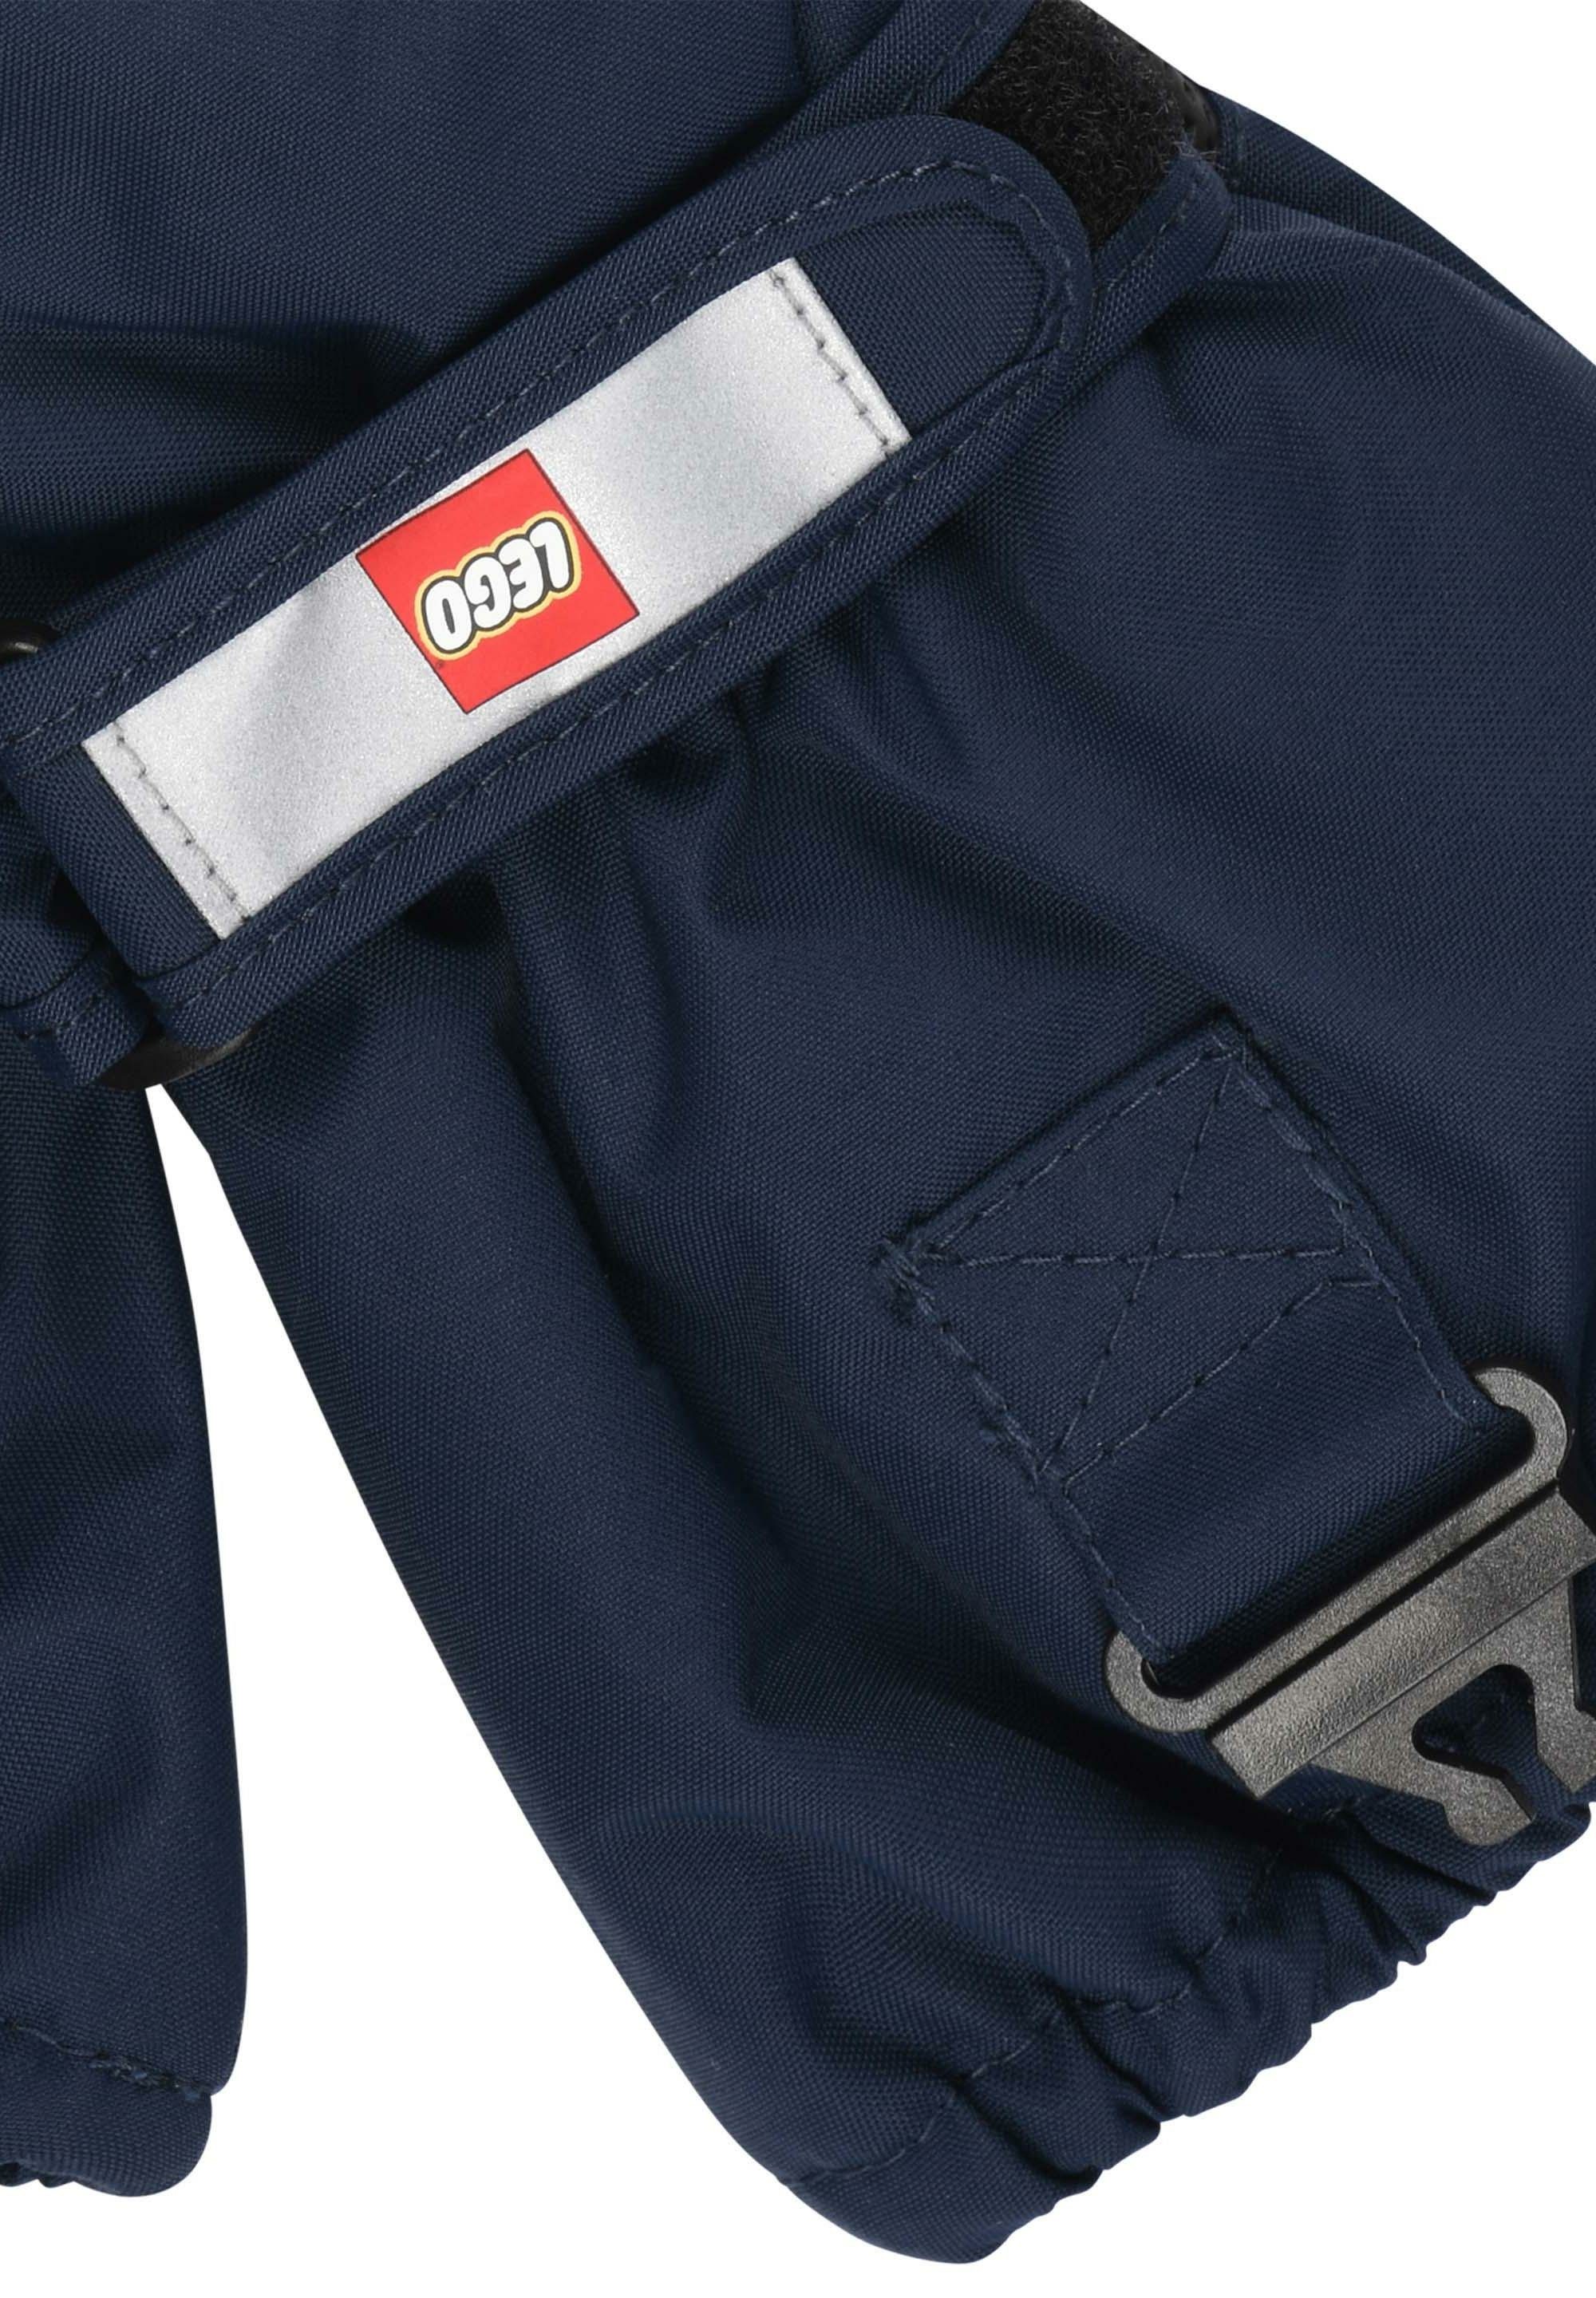 LWATLIN Wear 706 Fäustlinge Wasserdicht, dark LEGO® navy und Warm Skihandschuhe